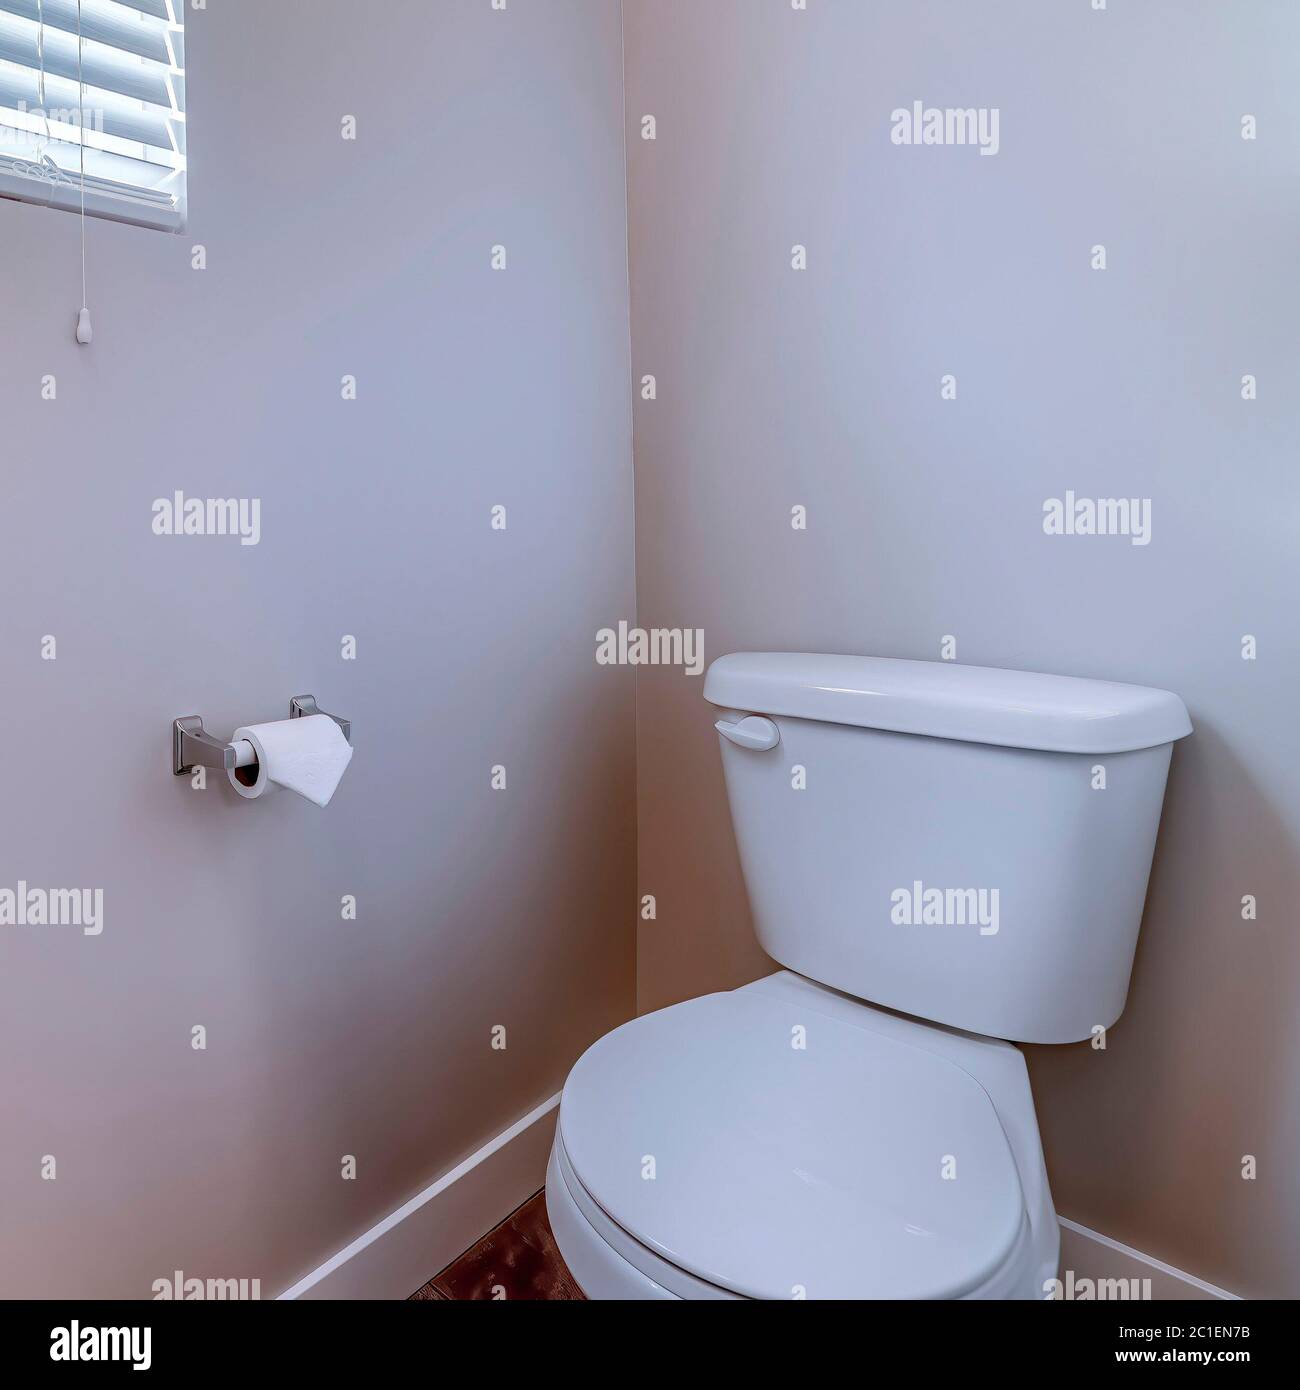 WC quadrato all'angolo di un bagno contro la parete grigia con